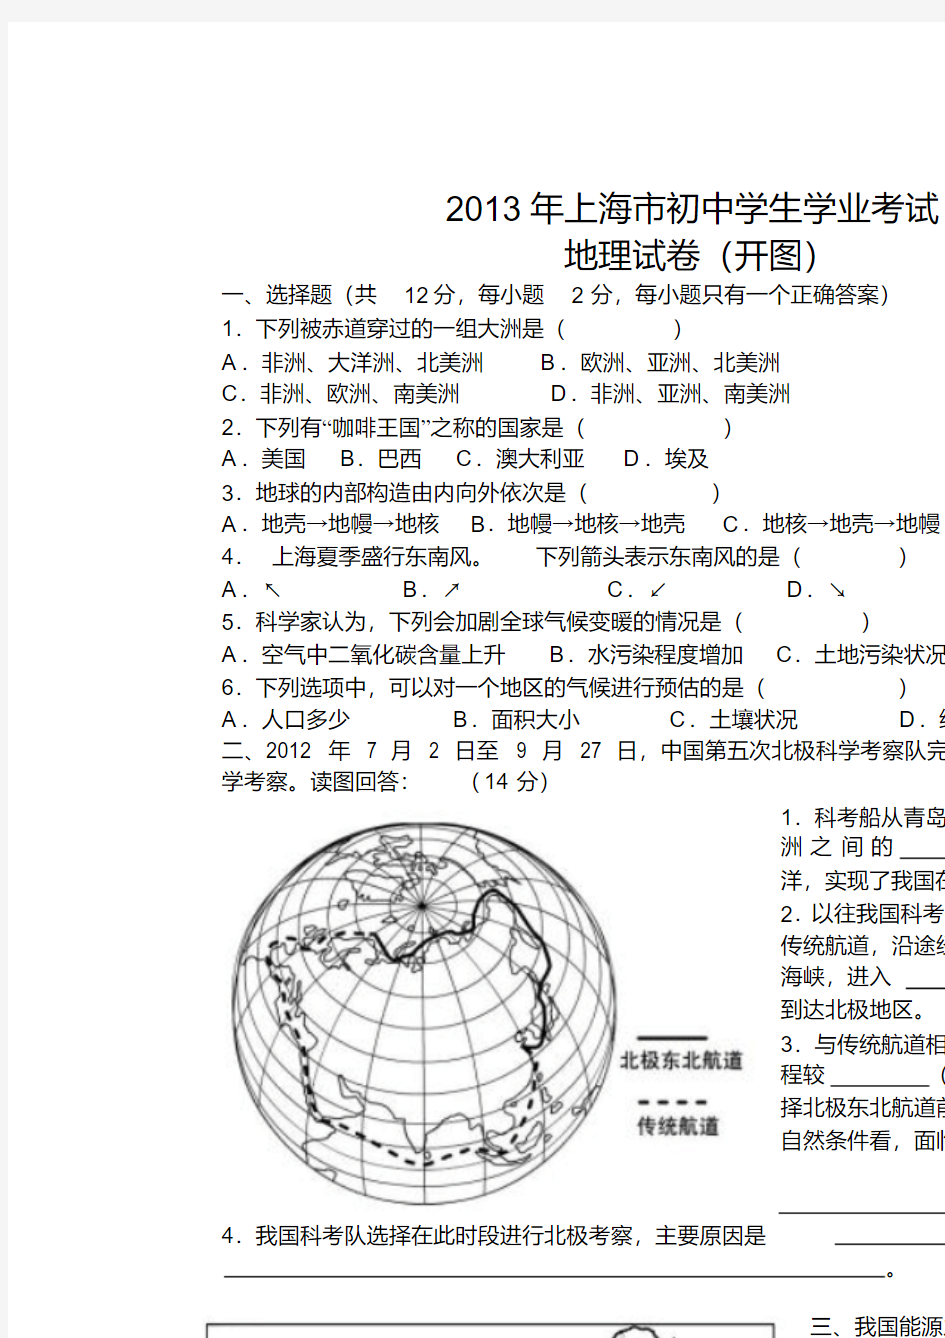 【优质文档】2013年上海市初中地理学业考试试卷